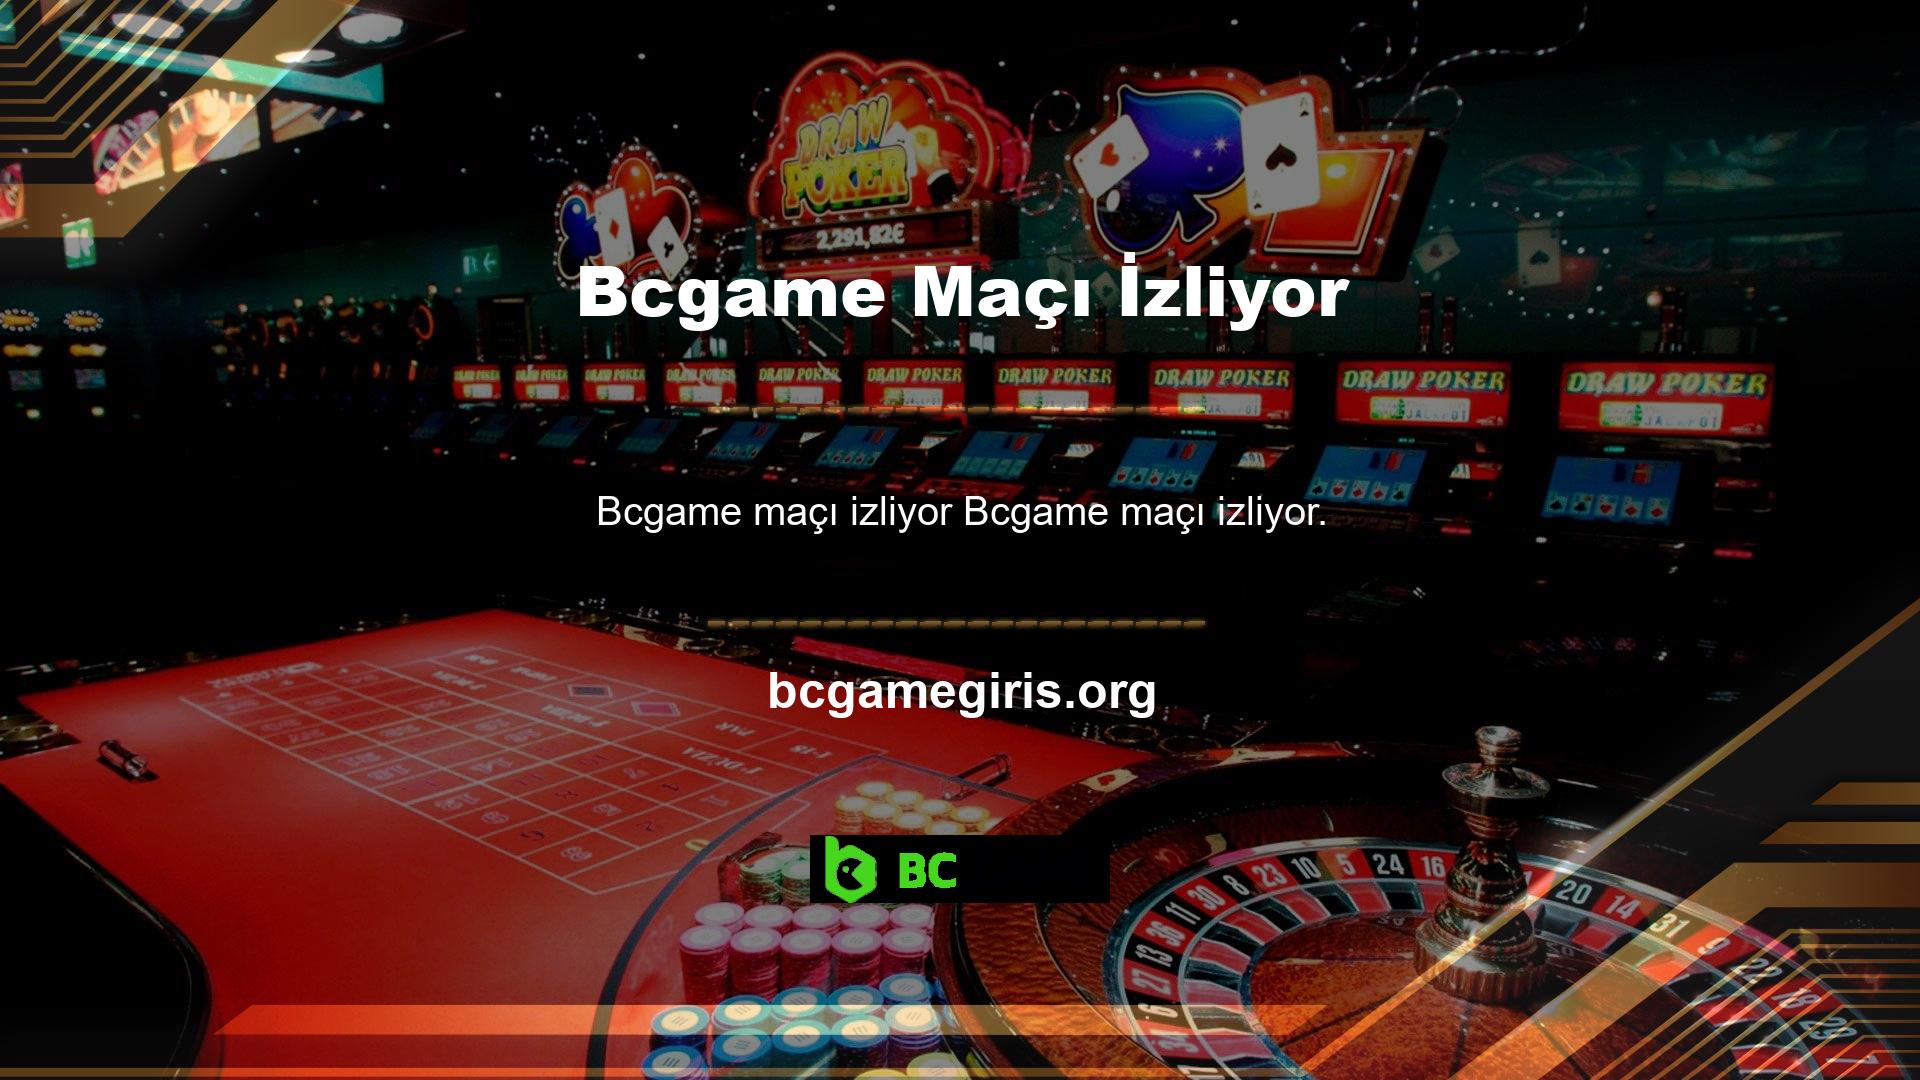 Bcgame maç izleme hizmeti, geniş bir yaş grubunun yararlandığı hizmetlerden biridir